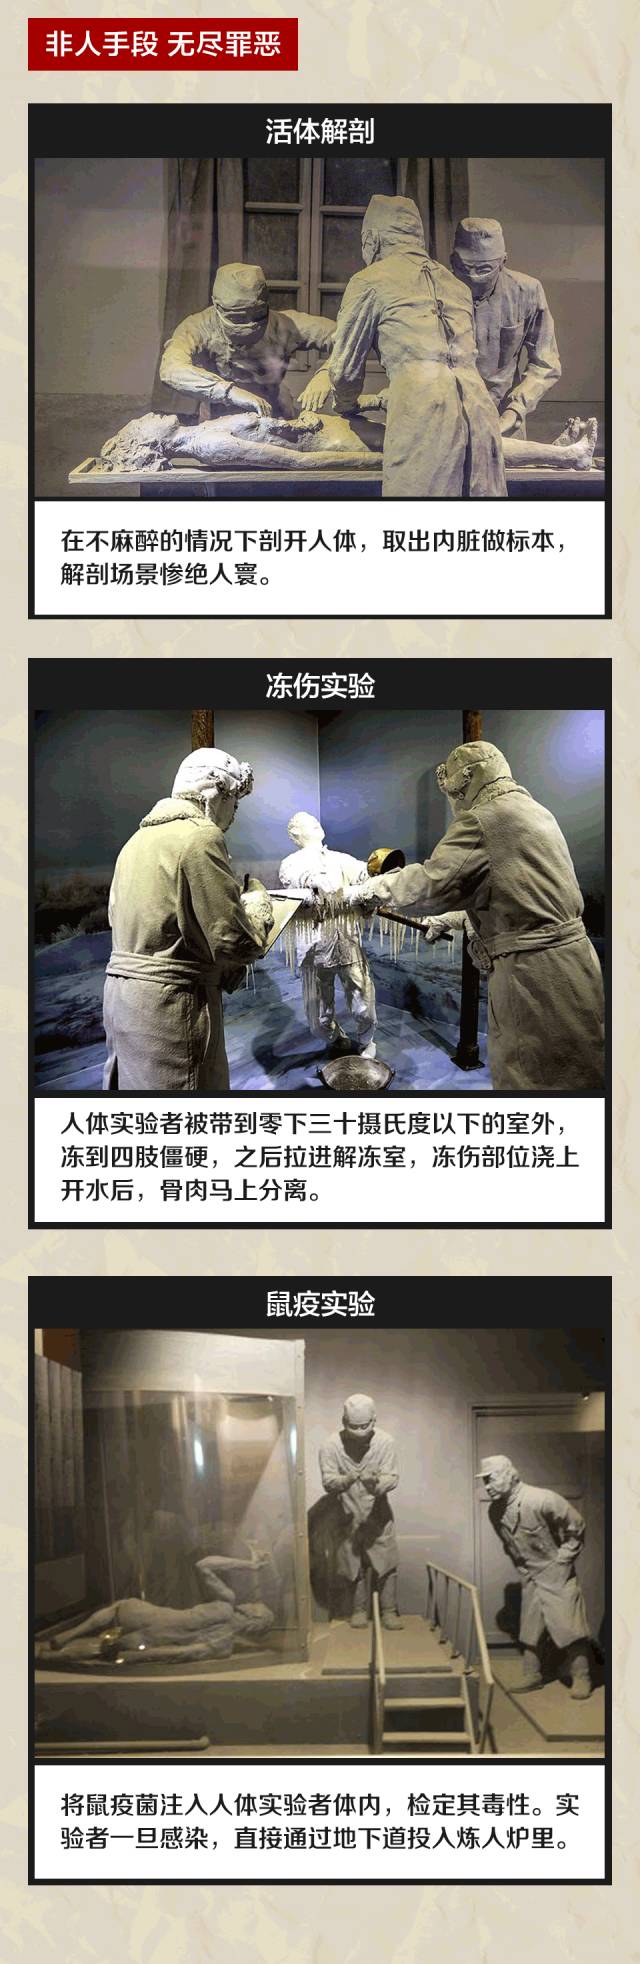 中国灵异部队图片